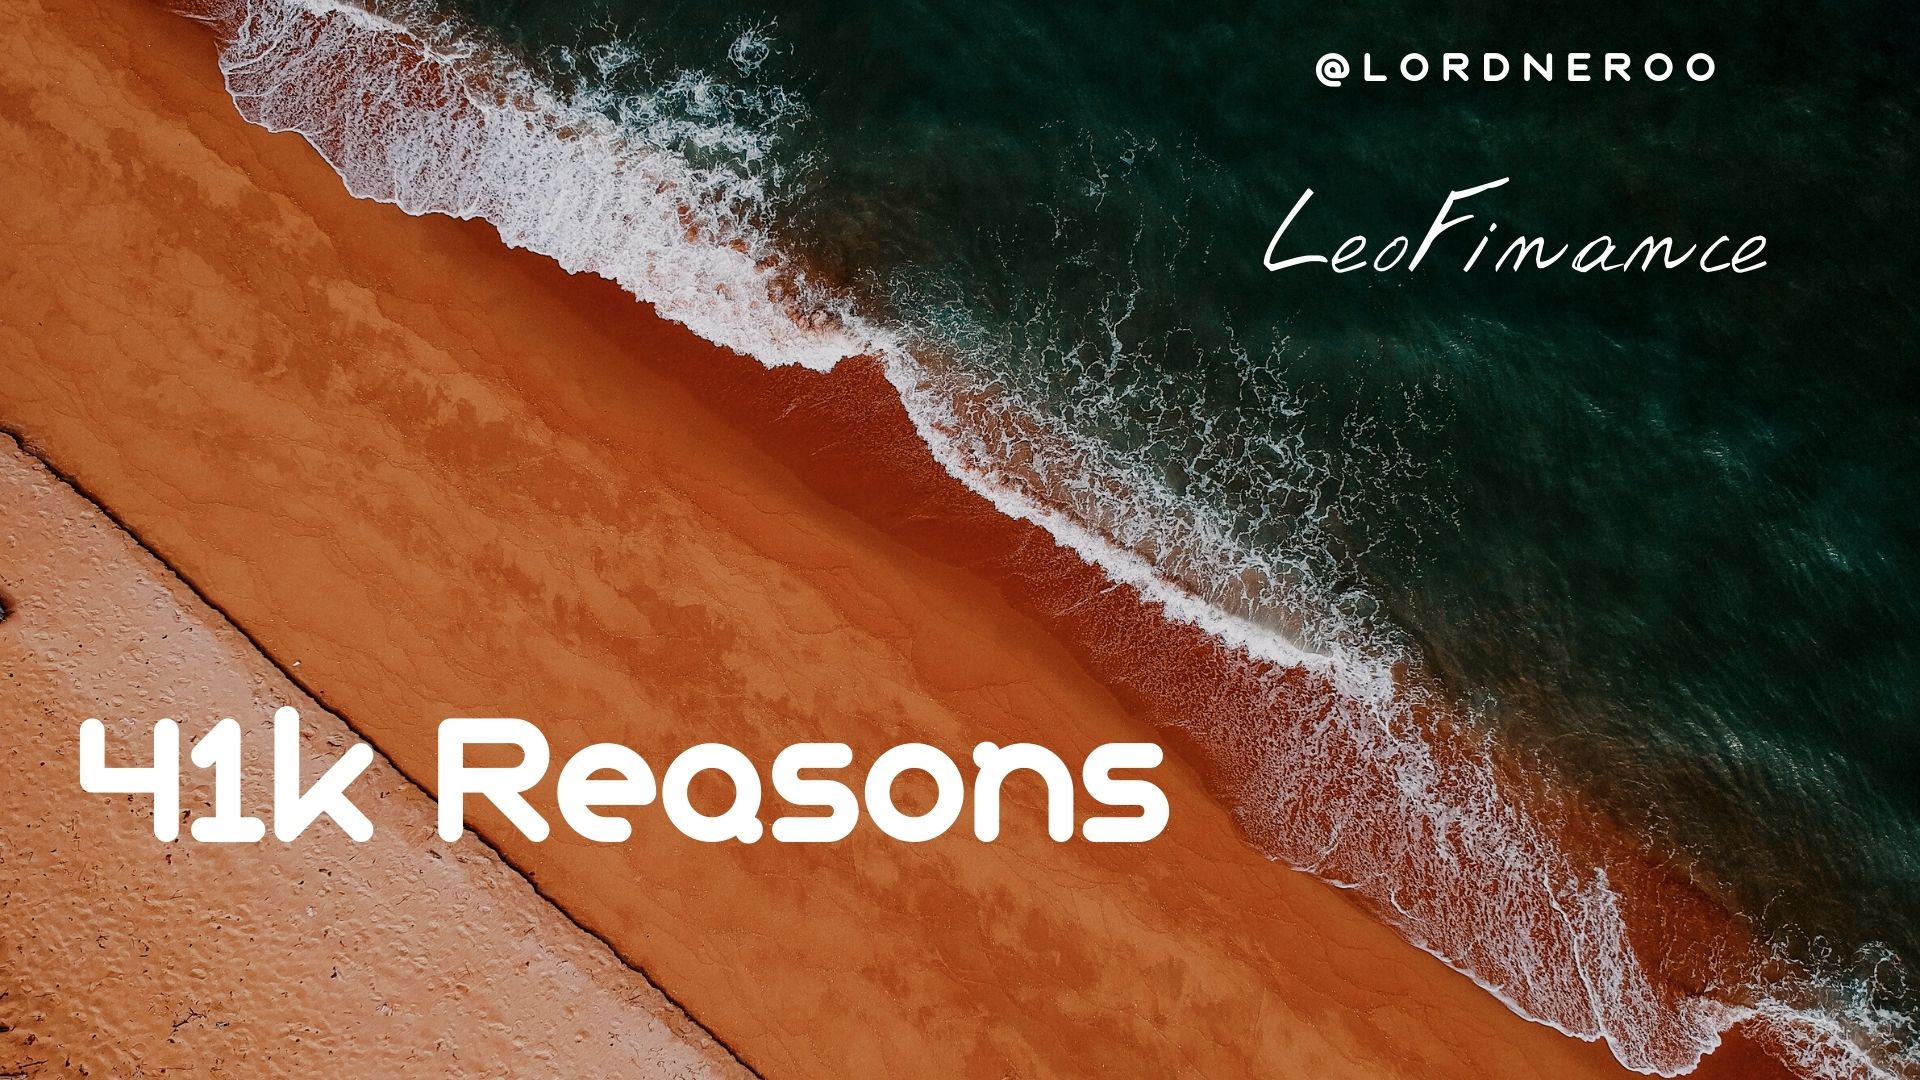 41k Reasons @lordneroo.jpg